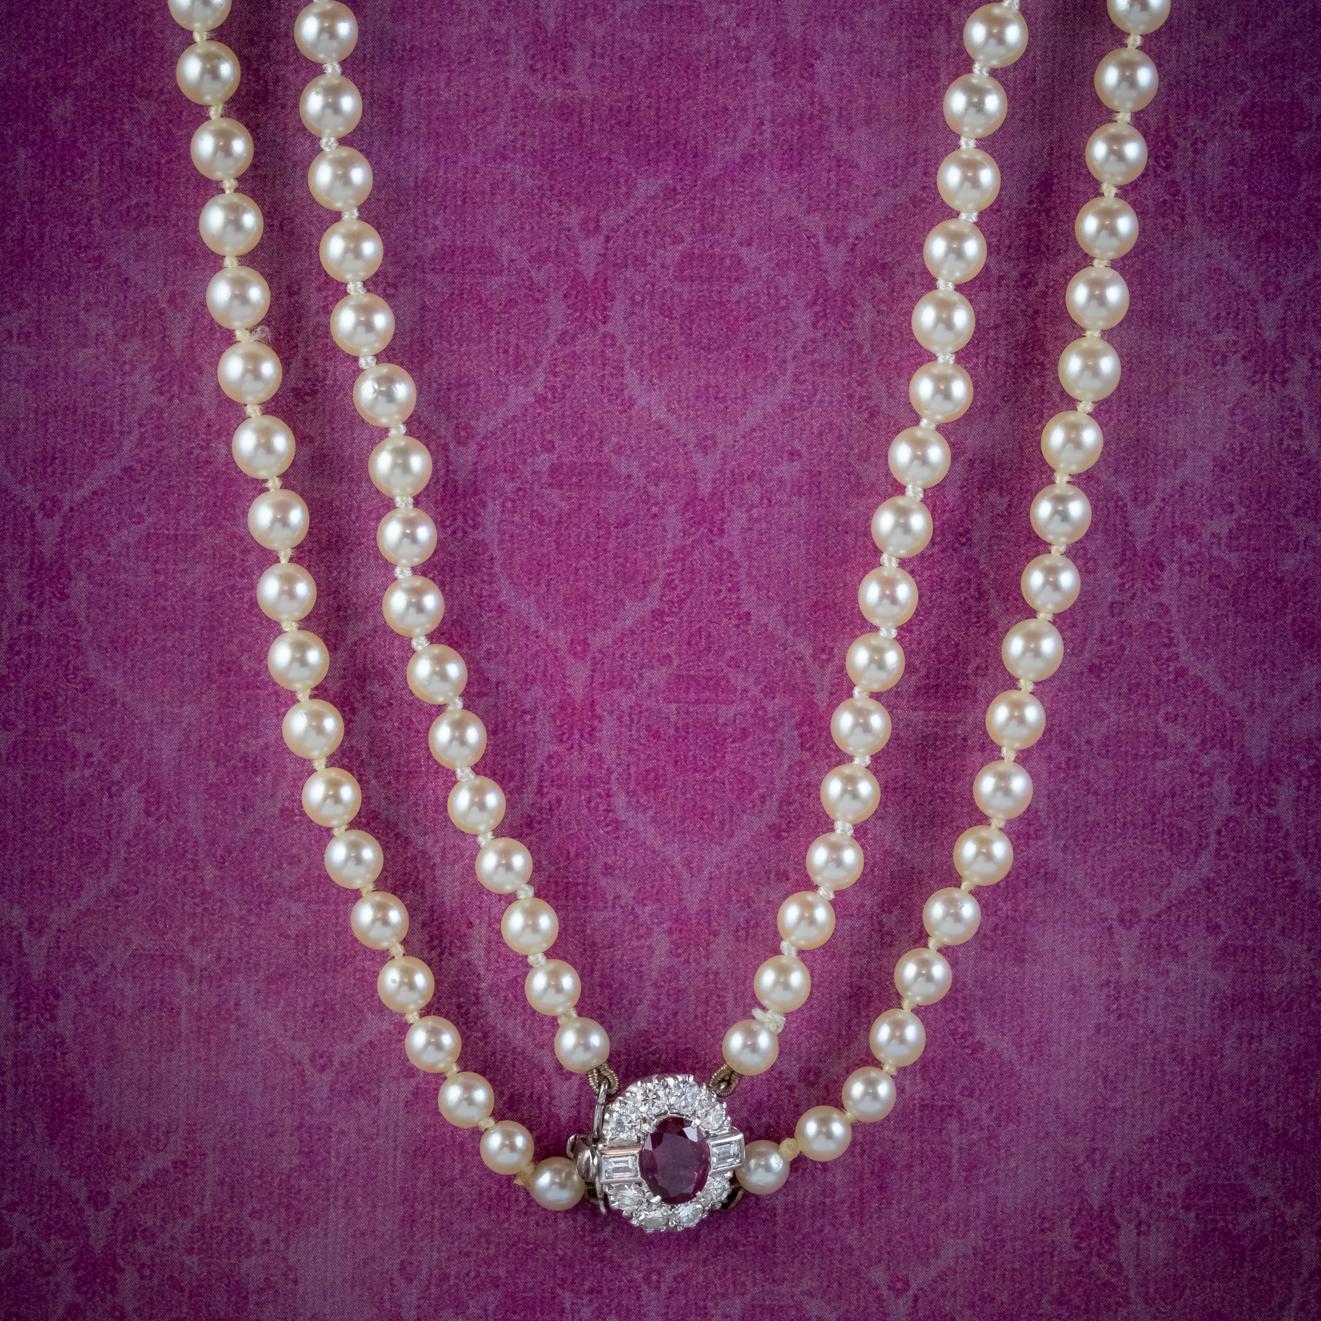 Eine großartige Art-Deco-Perlenkette mit zwei Strängen aus herrlich schimmernden Zuchtperlen, die nach unten hin an Größe zunehmen.

Zusammengehalten wird das Schmuckstück durch einen atemberaubenden Kastenverschluss aus 18 Karat Weißgold, der aus